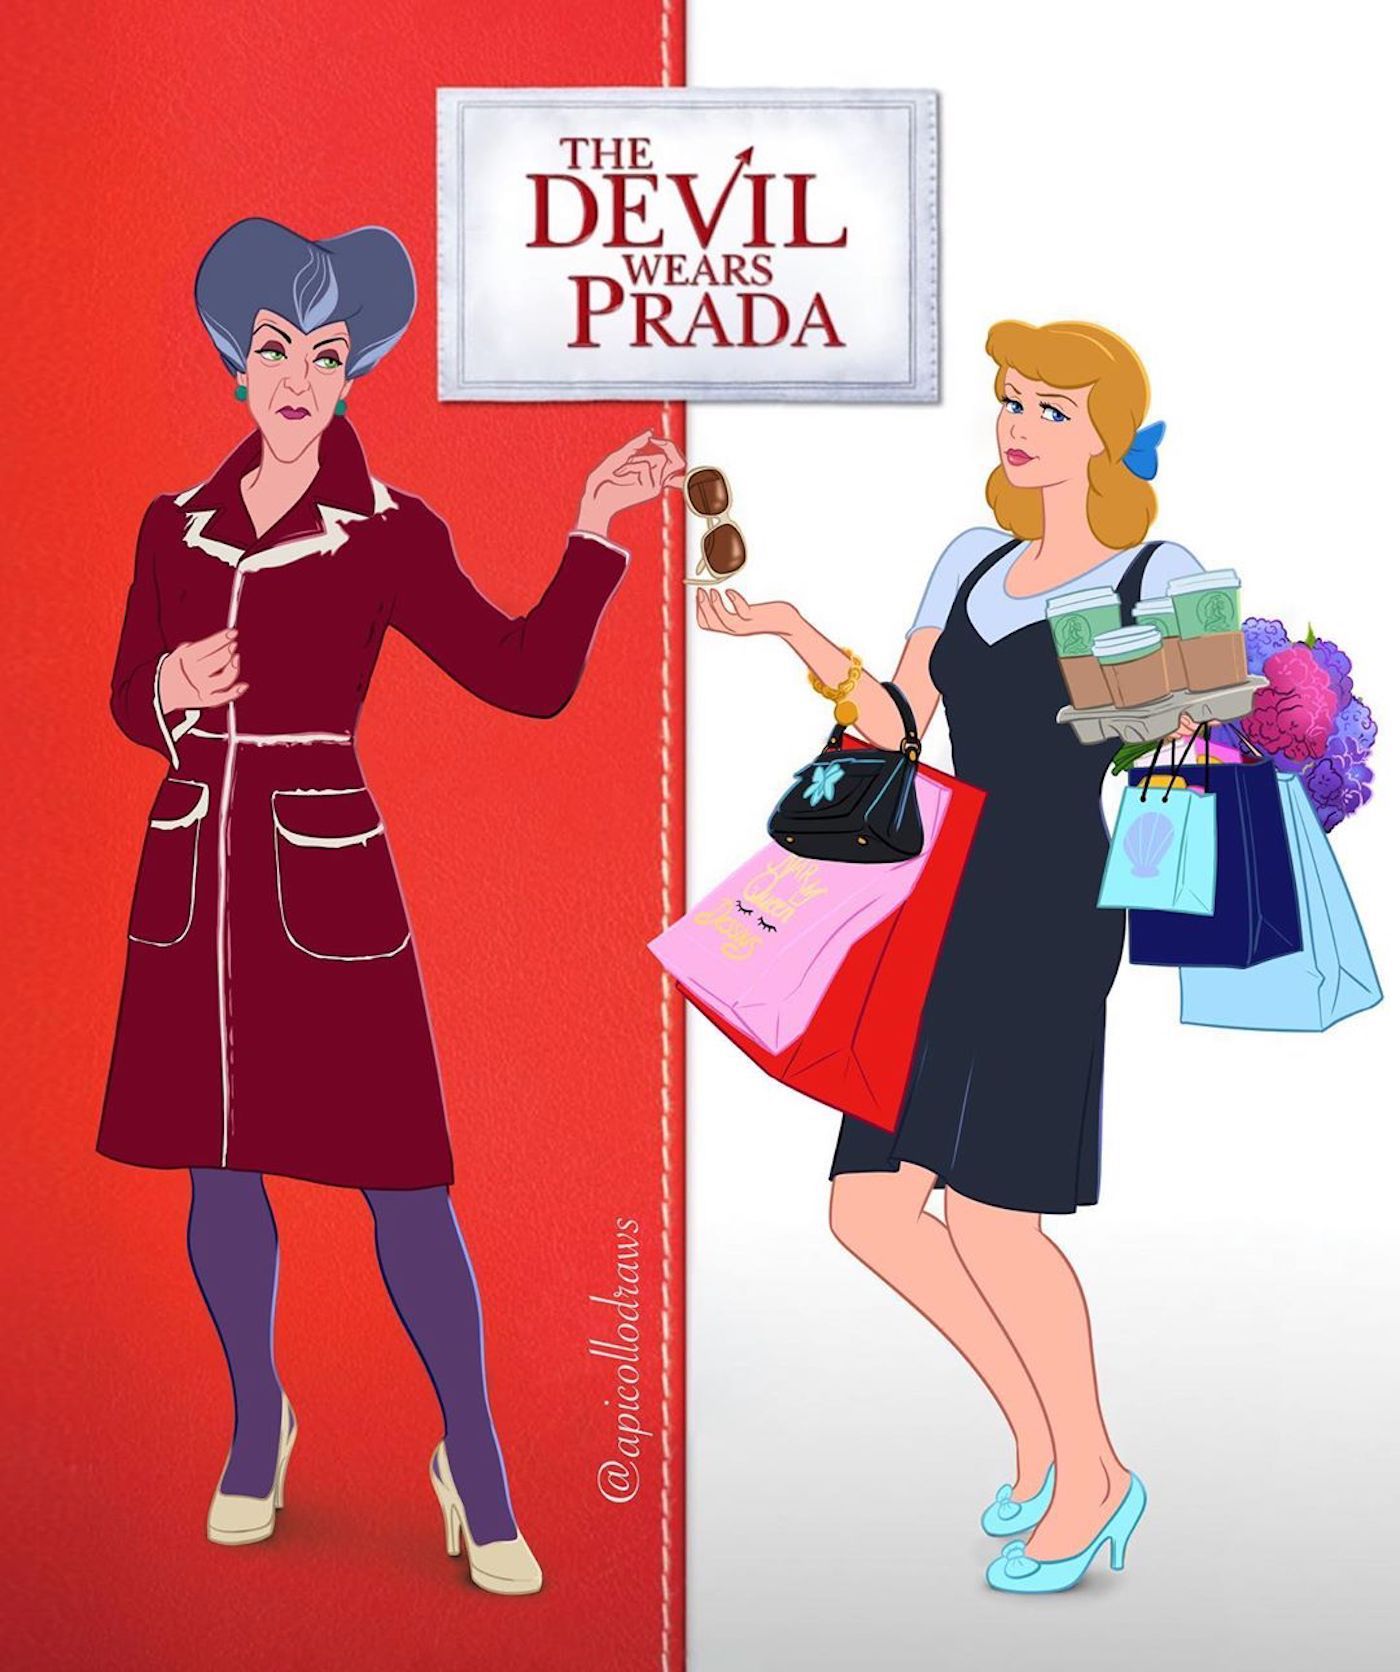 Les affiches de films avec des personnages Disney